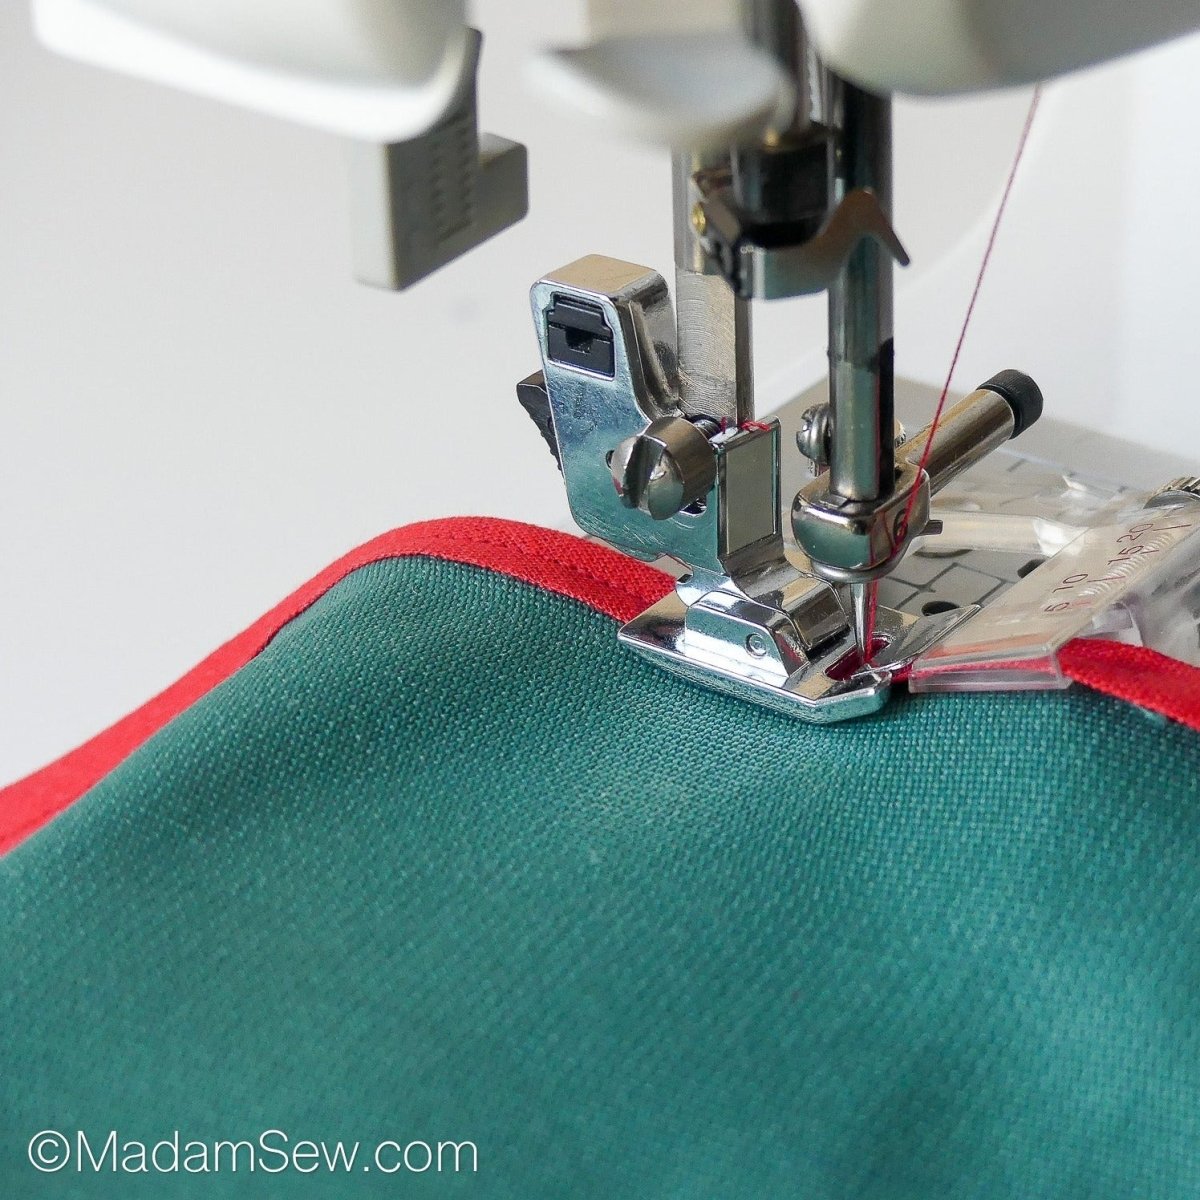 Fabric Bias Binding Tape Maker Kit Binder Foot For Sewing&Quilting Diy Tool  Kit